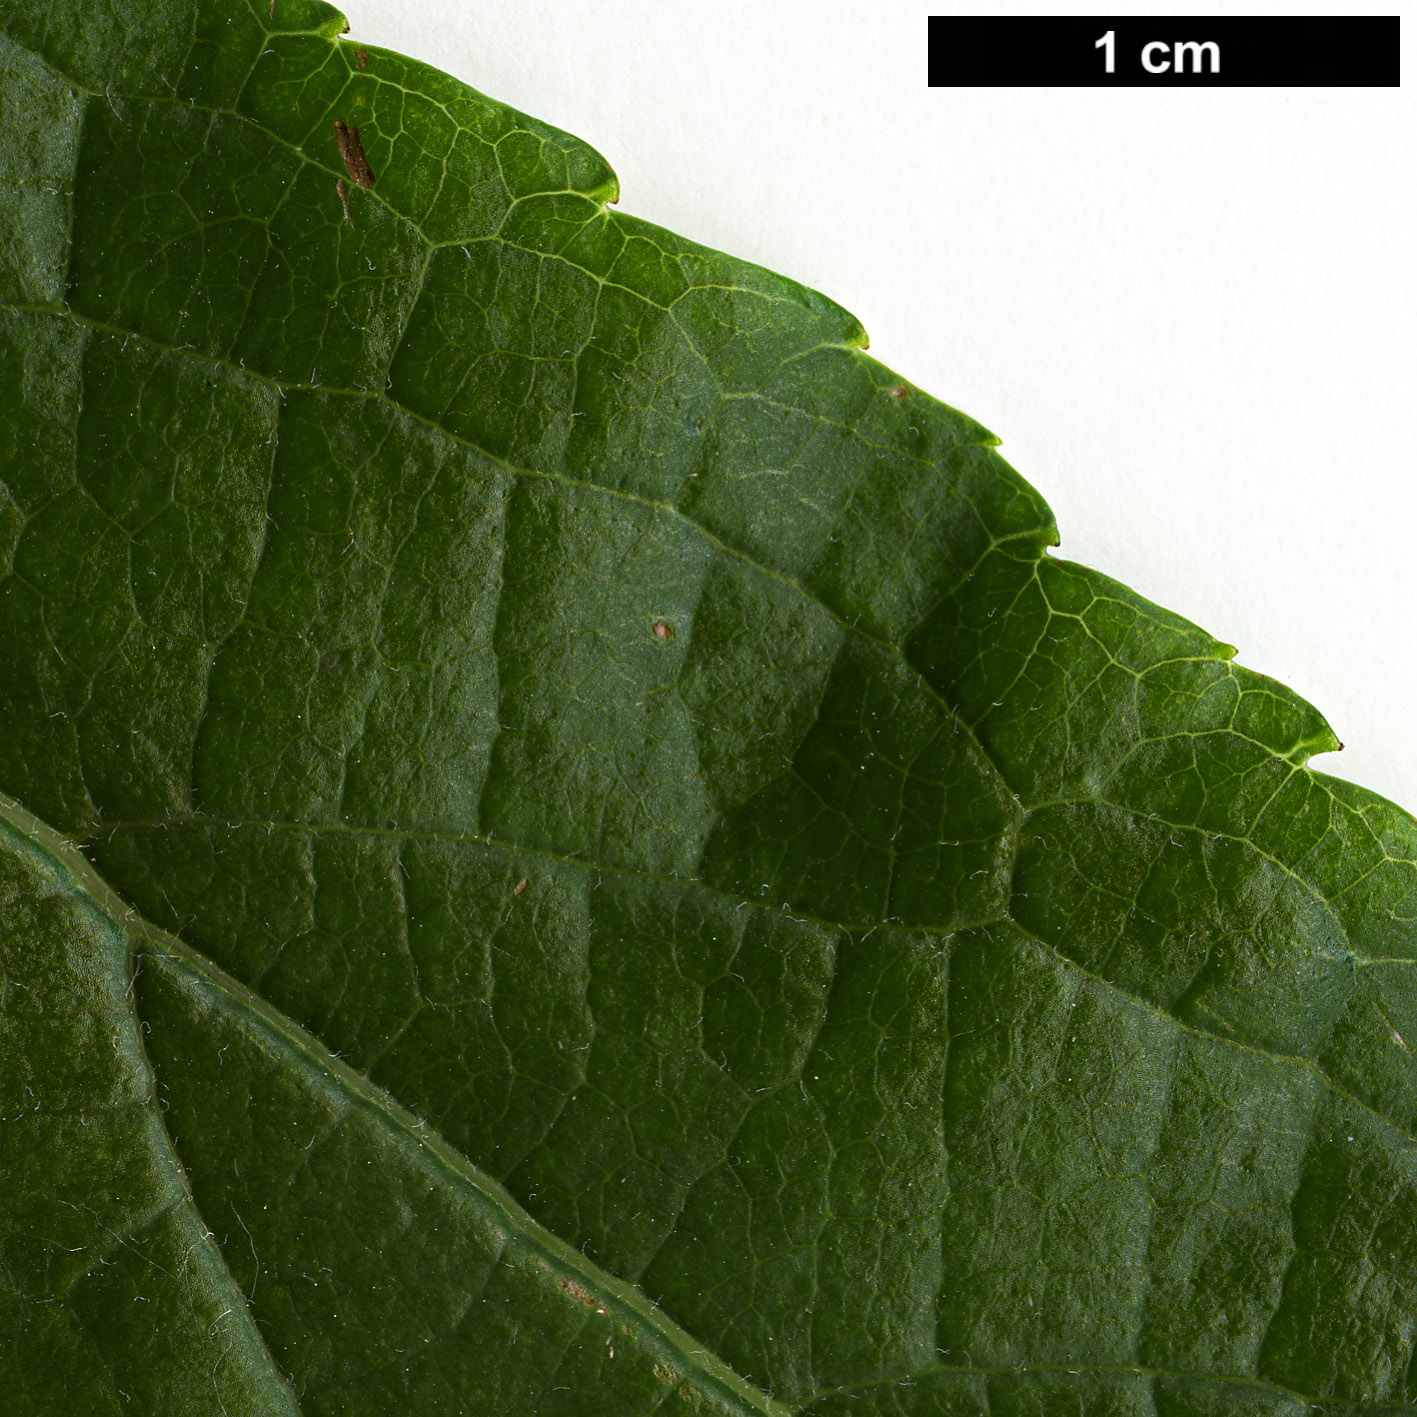 High resolution image: Family: Eucommiaceae - Genus: Eucommia - Taxon: ulmoides